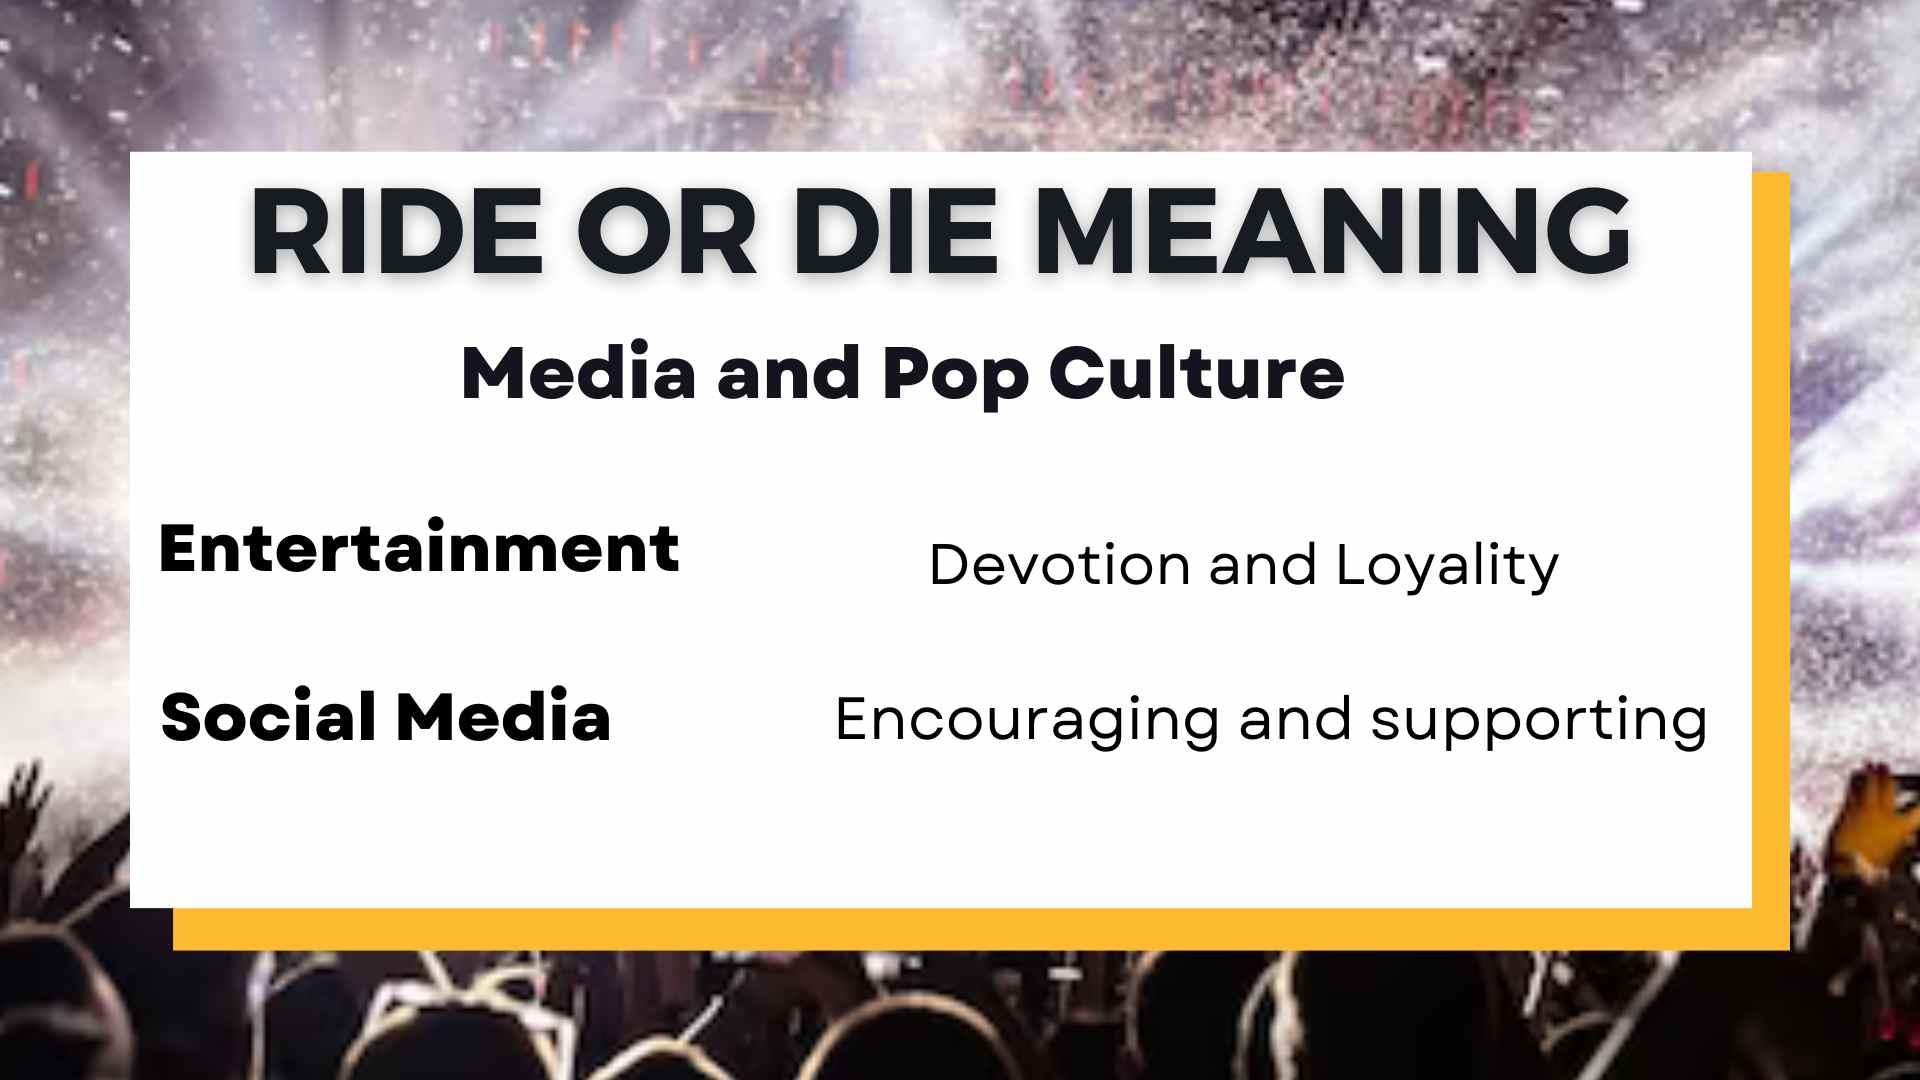 Media and Pop Culture: